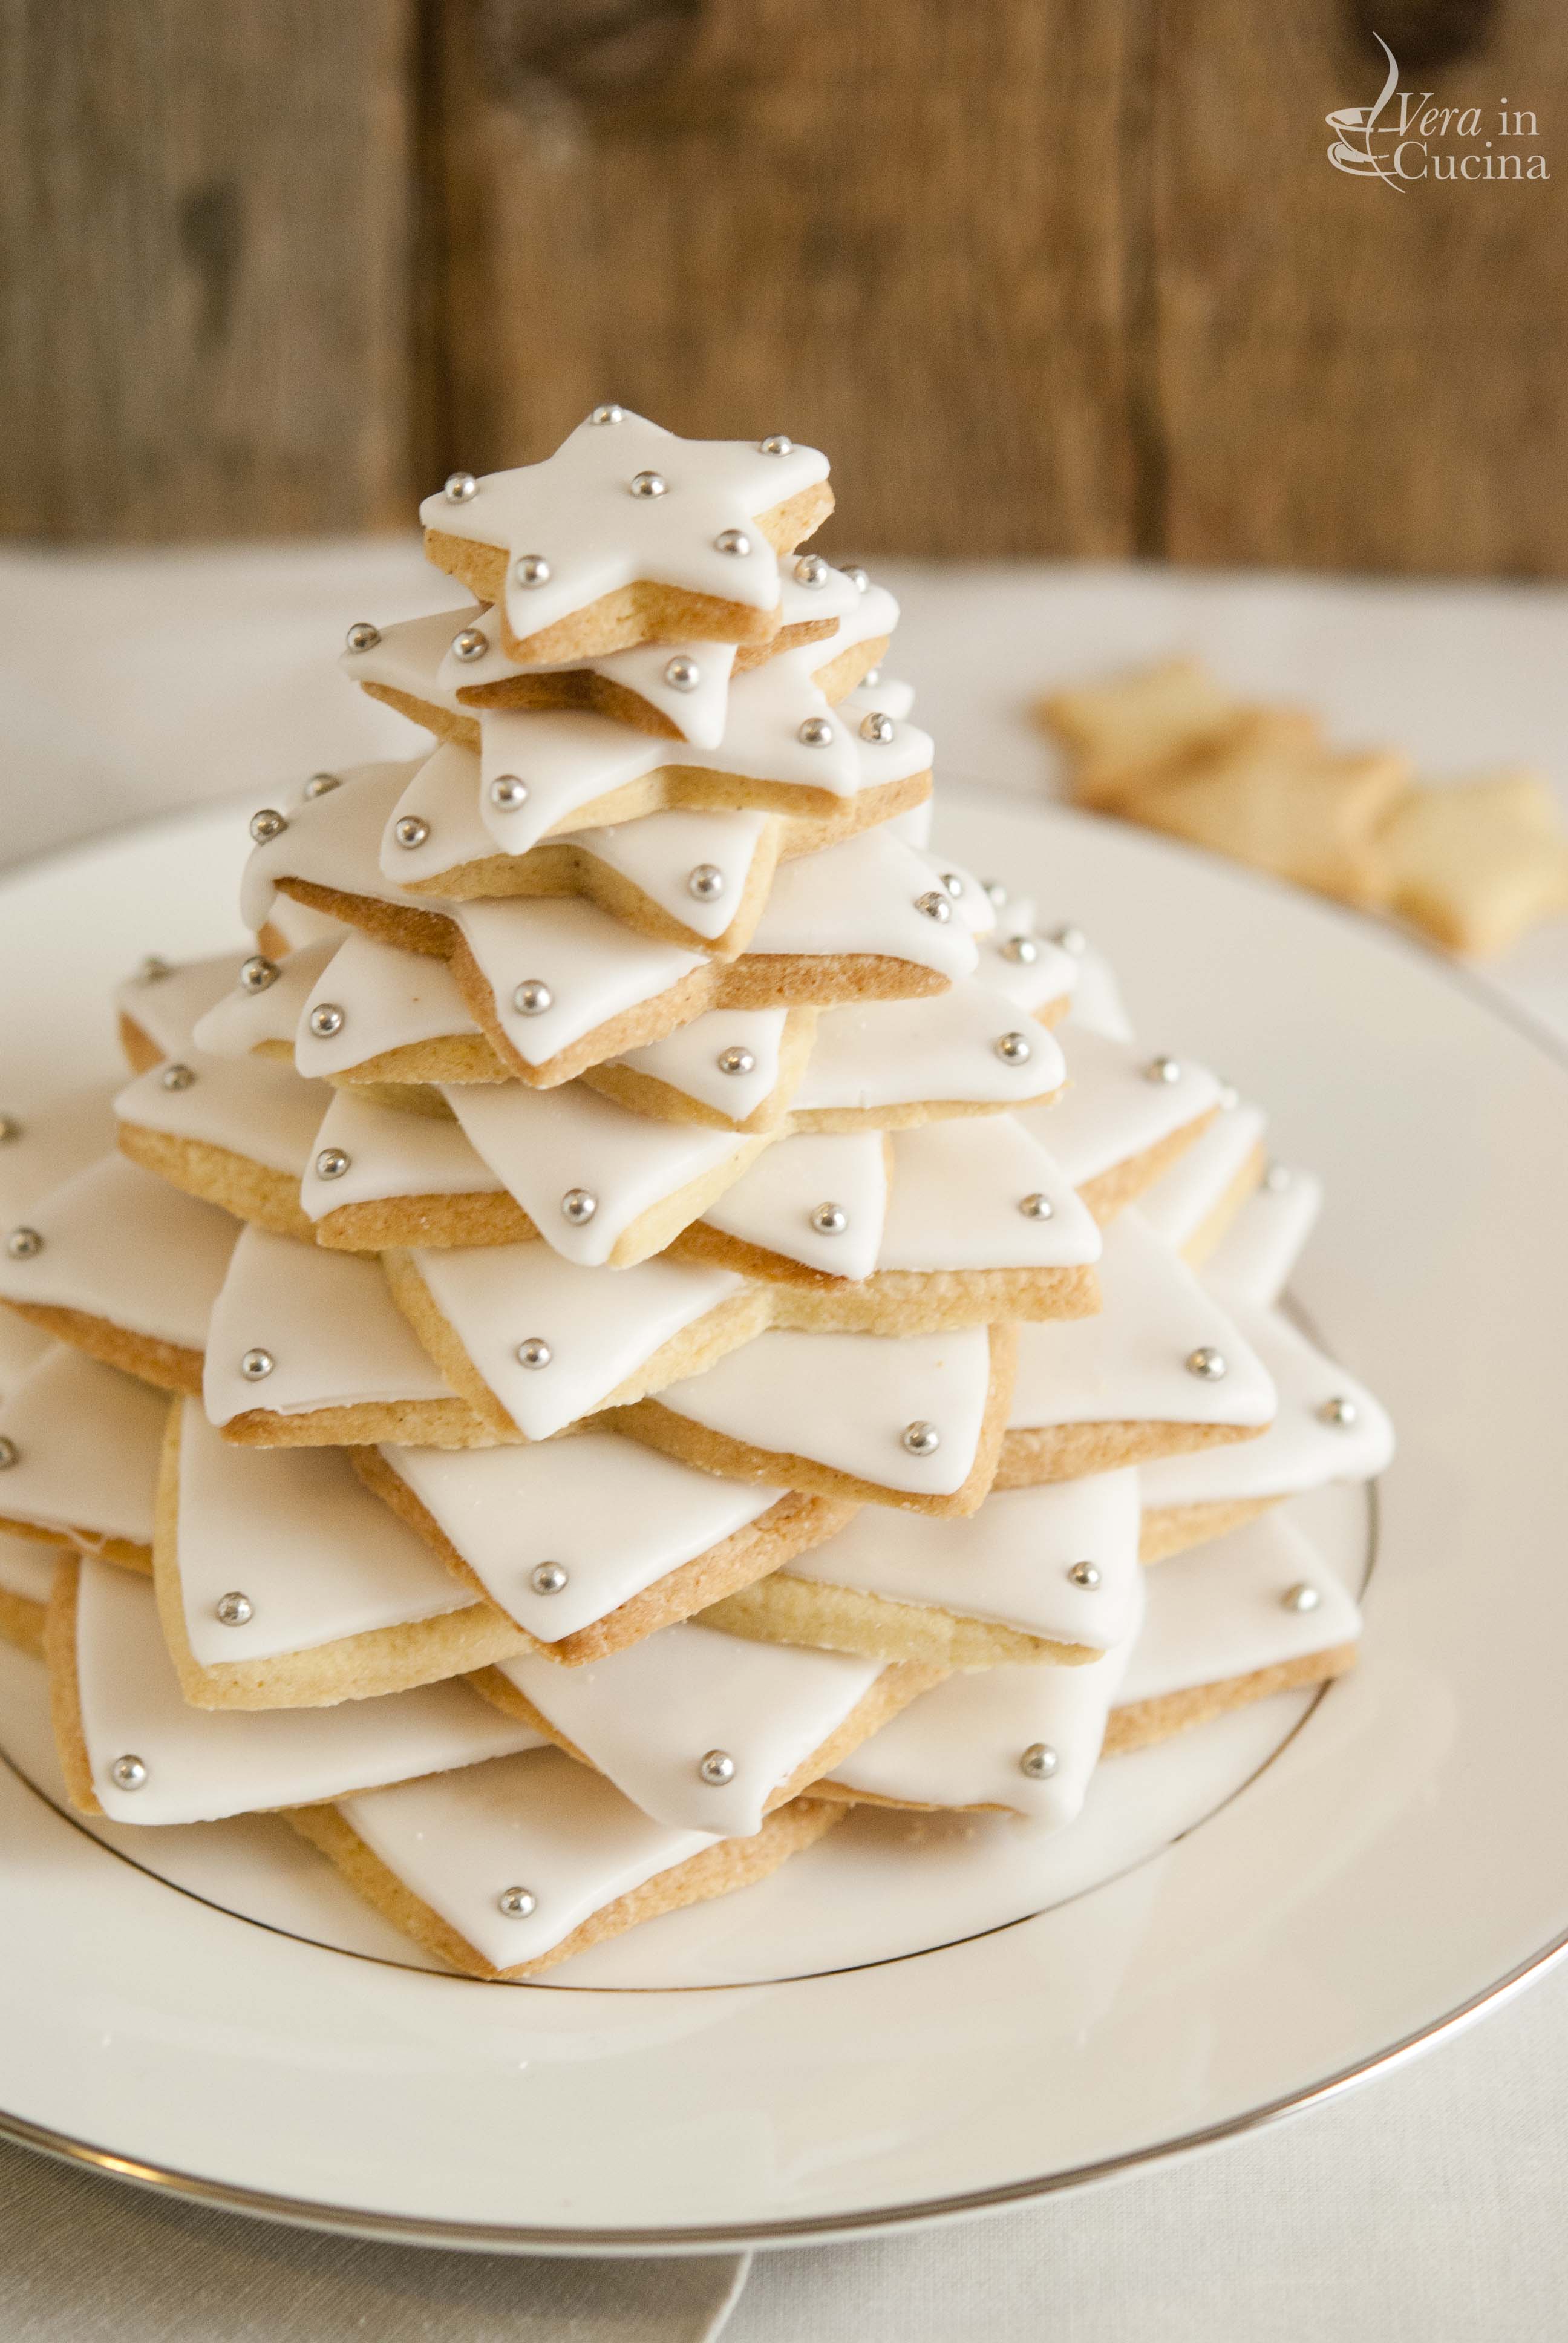 Biscotti Di Natale Pasta Frolla.Un Albero Di Natale Di Biscotti Per La Cena Della Vigilia Vera In Cucina